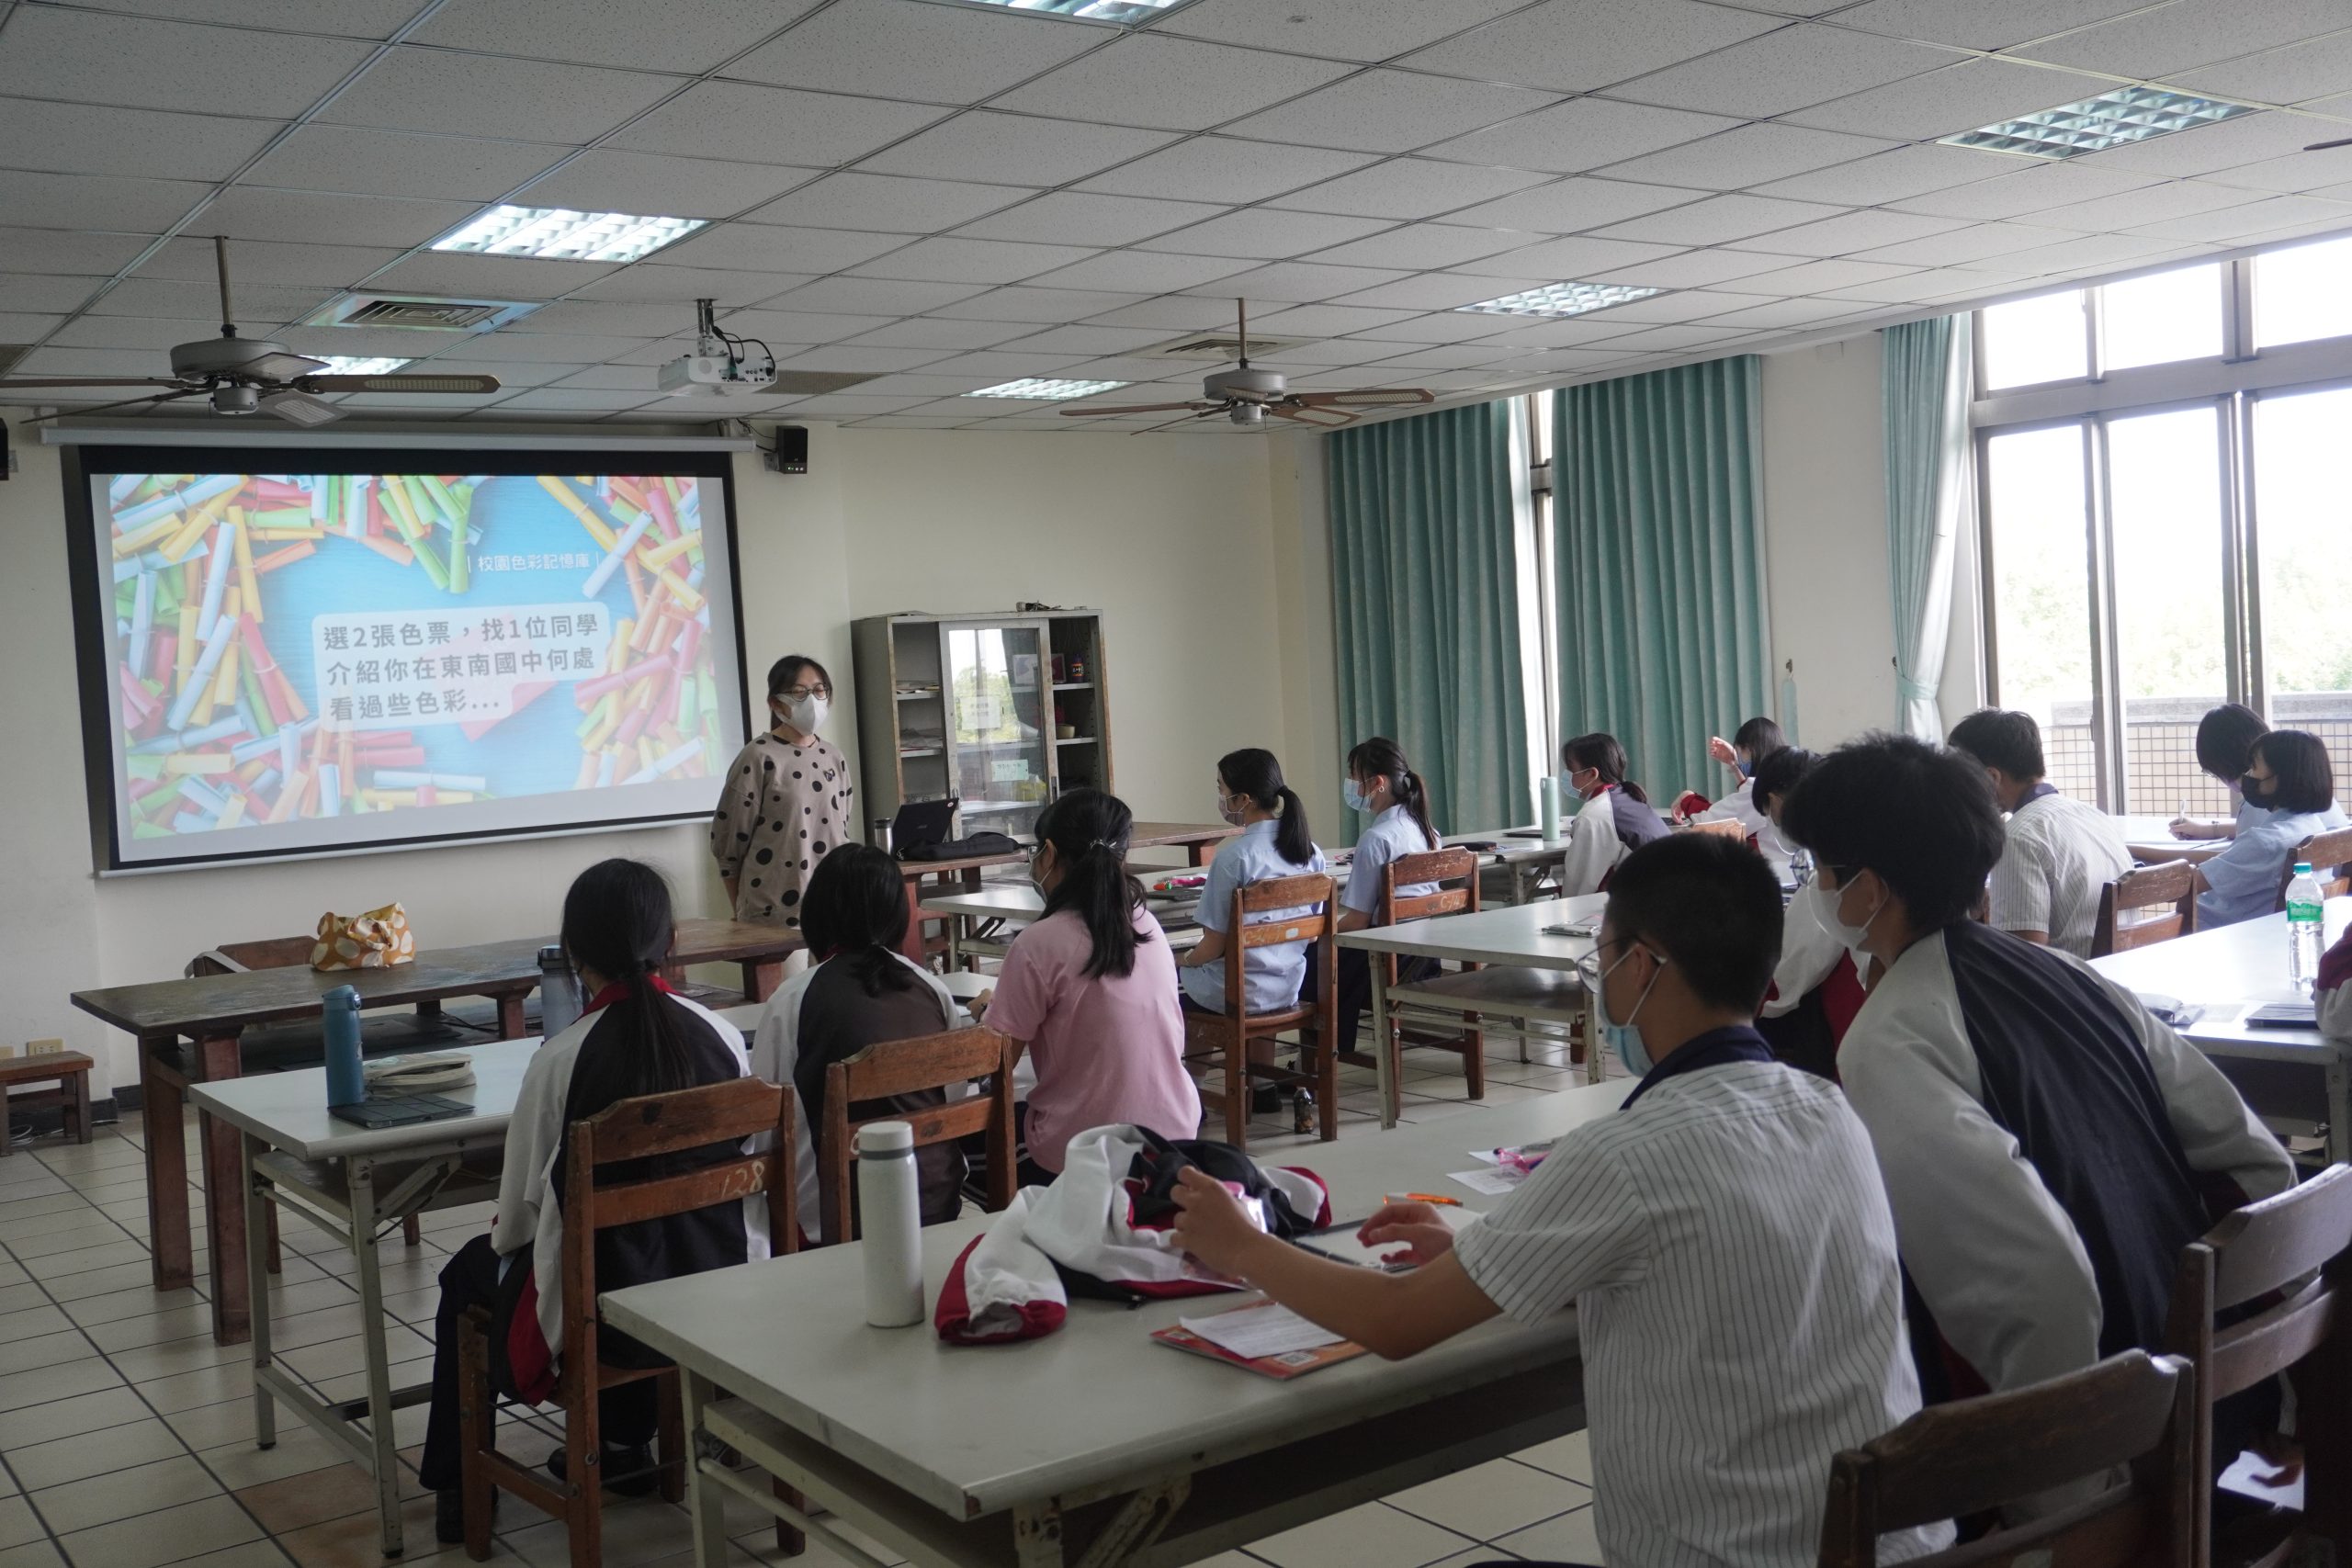 111學年度第二學期於雲林縣私立東南國民中學施辦自拍拼圖課程實作紀錄系列照片共31張